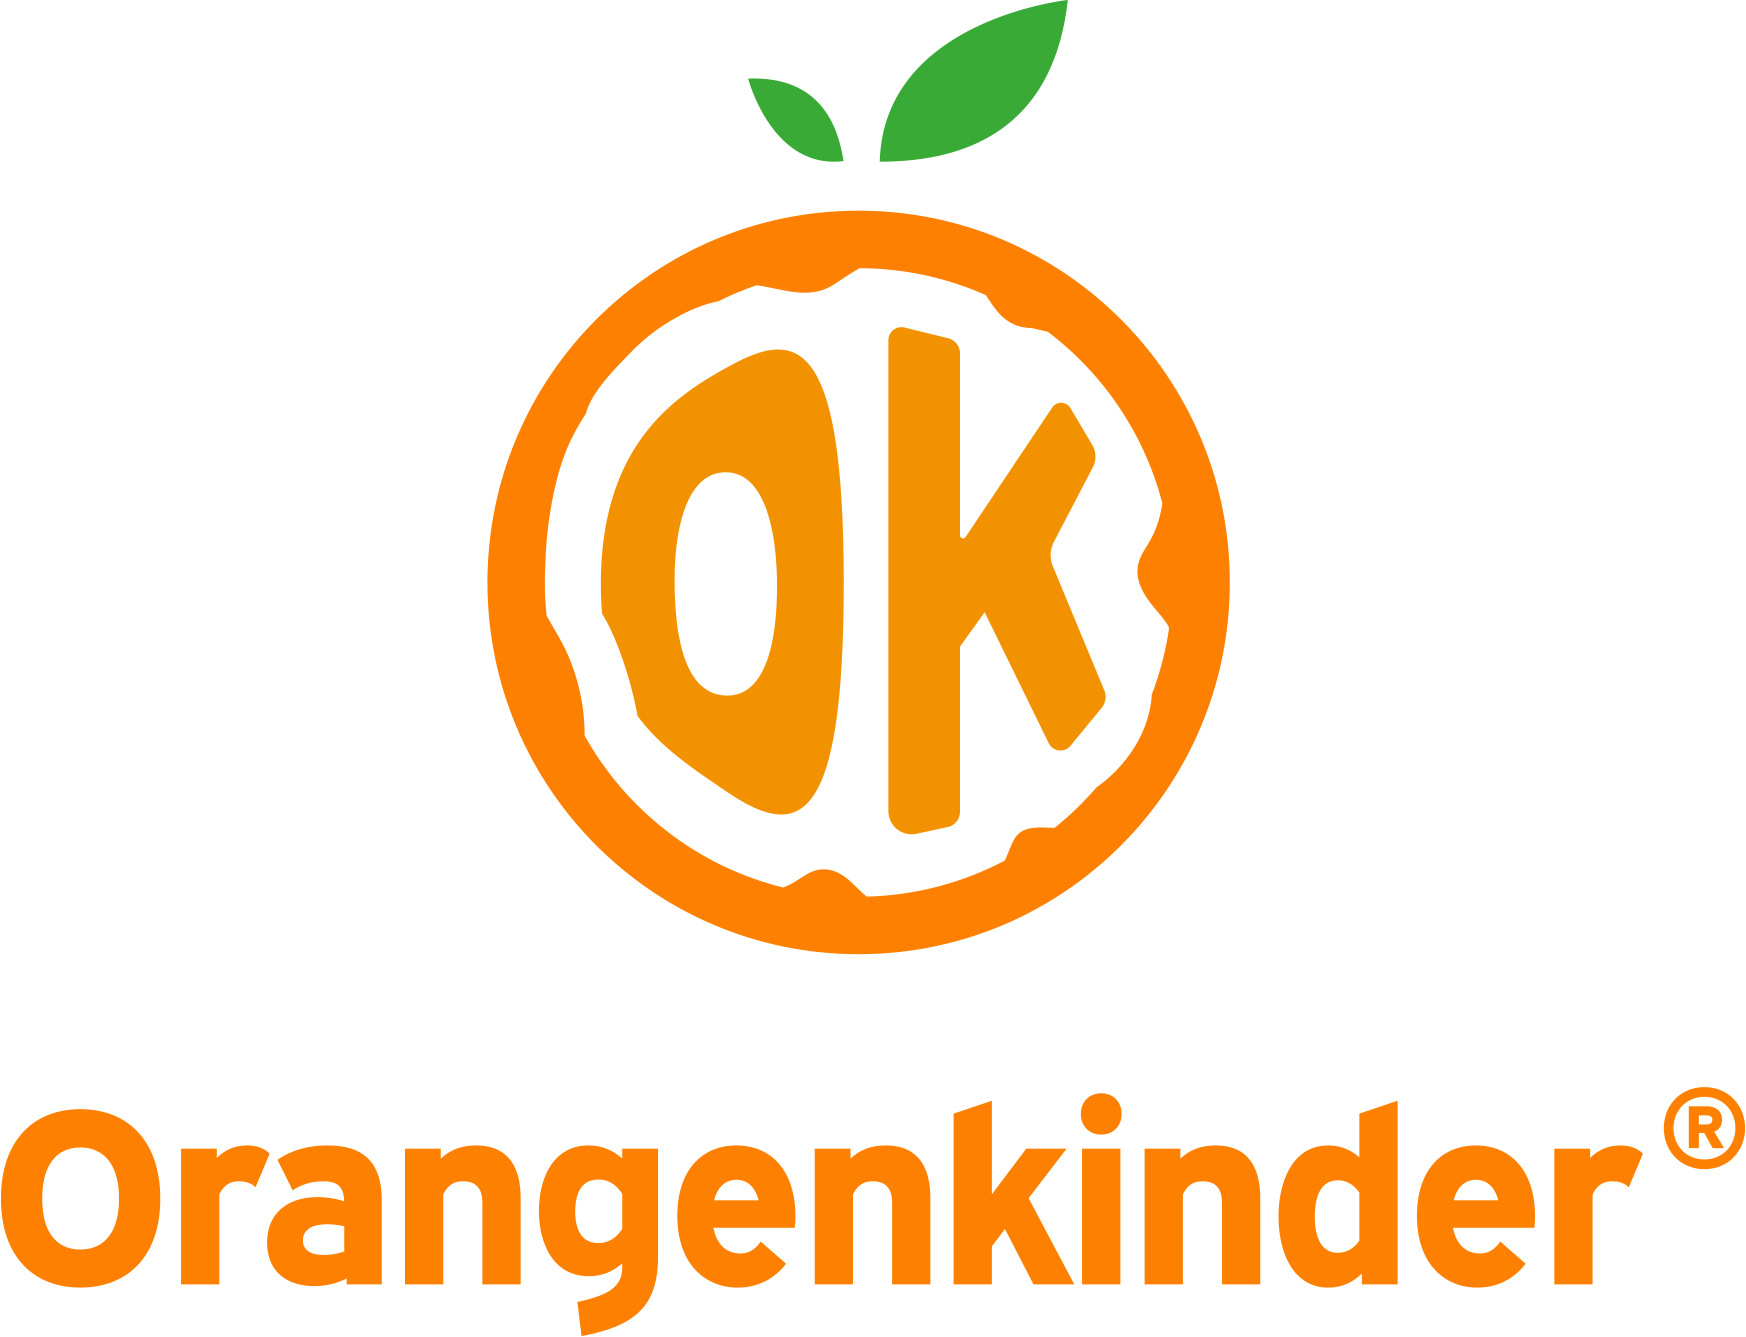 Orangenkinder